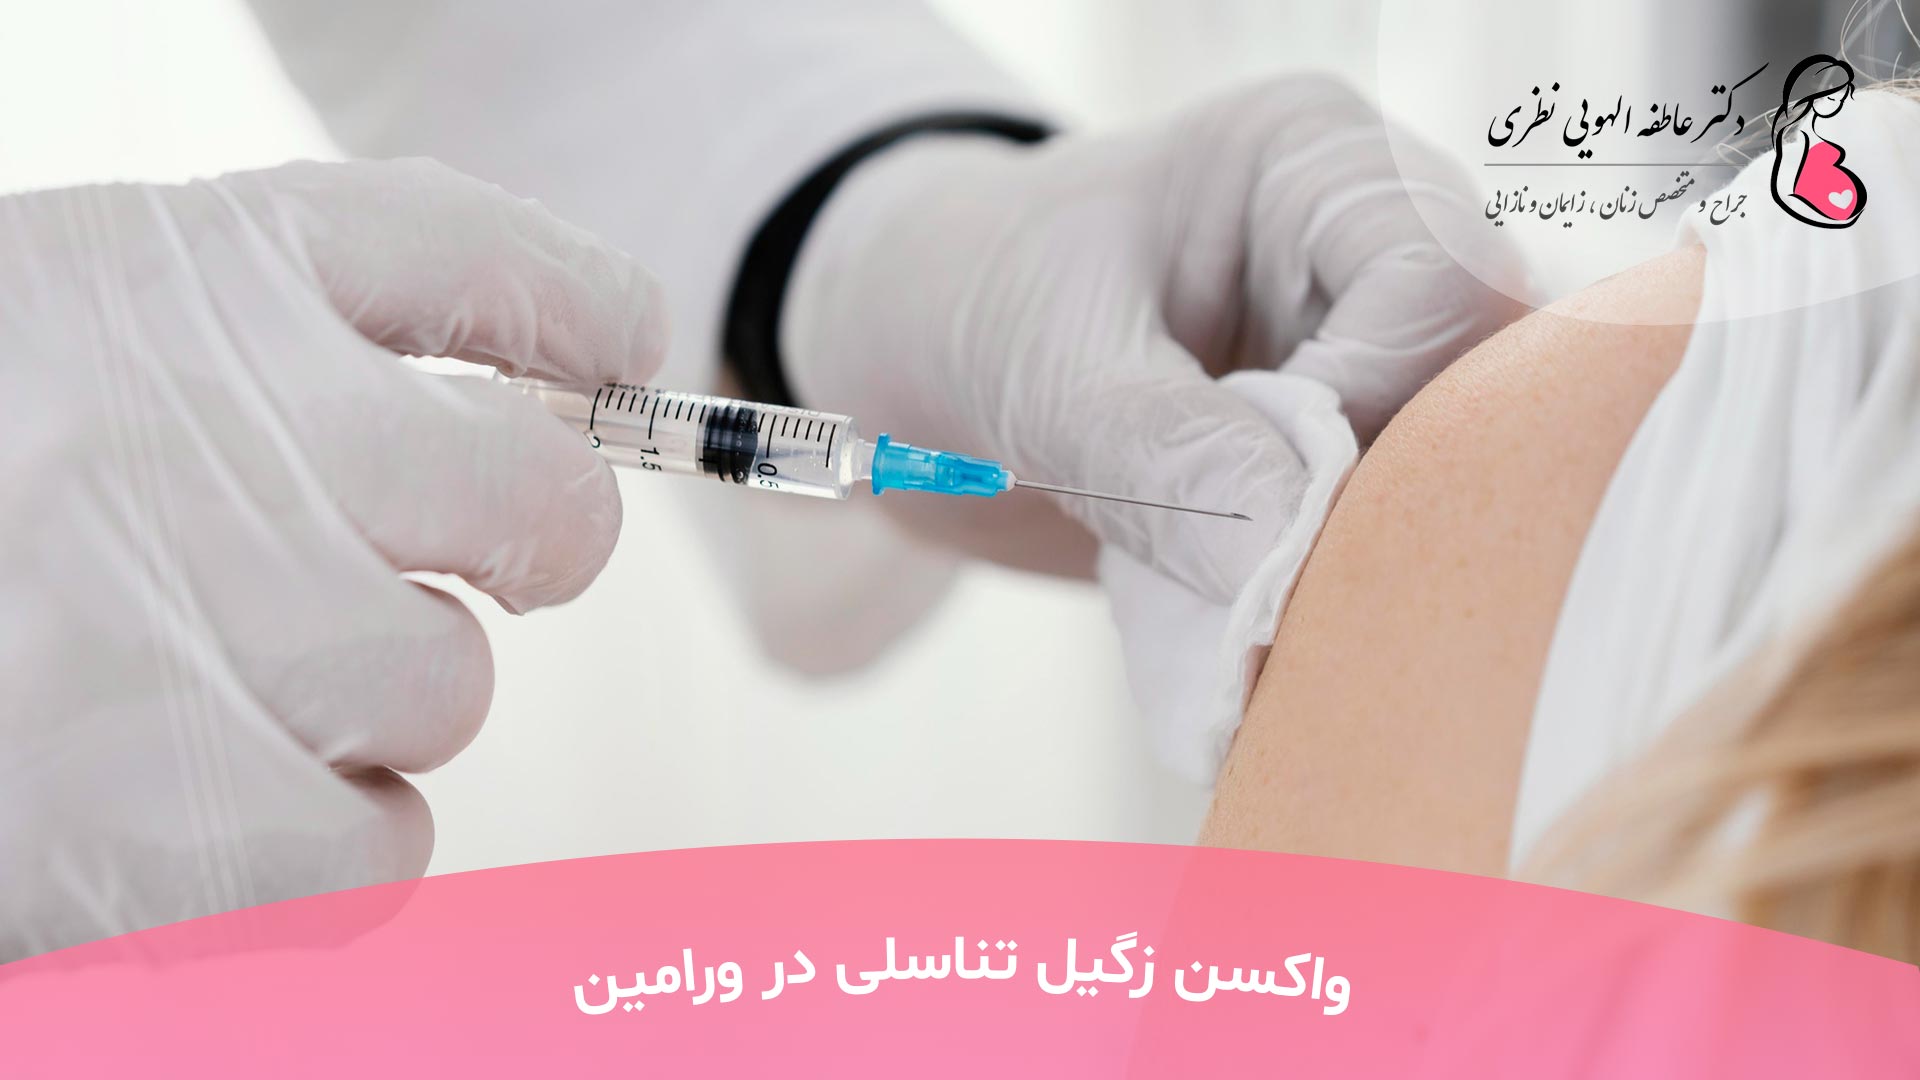 واکسن زگیل تناسلی در کرج